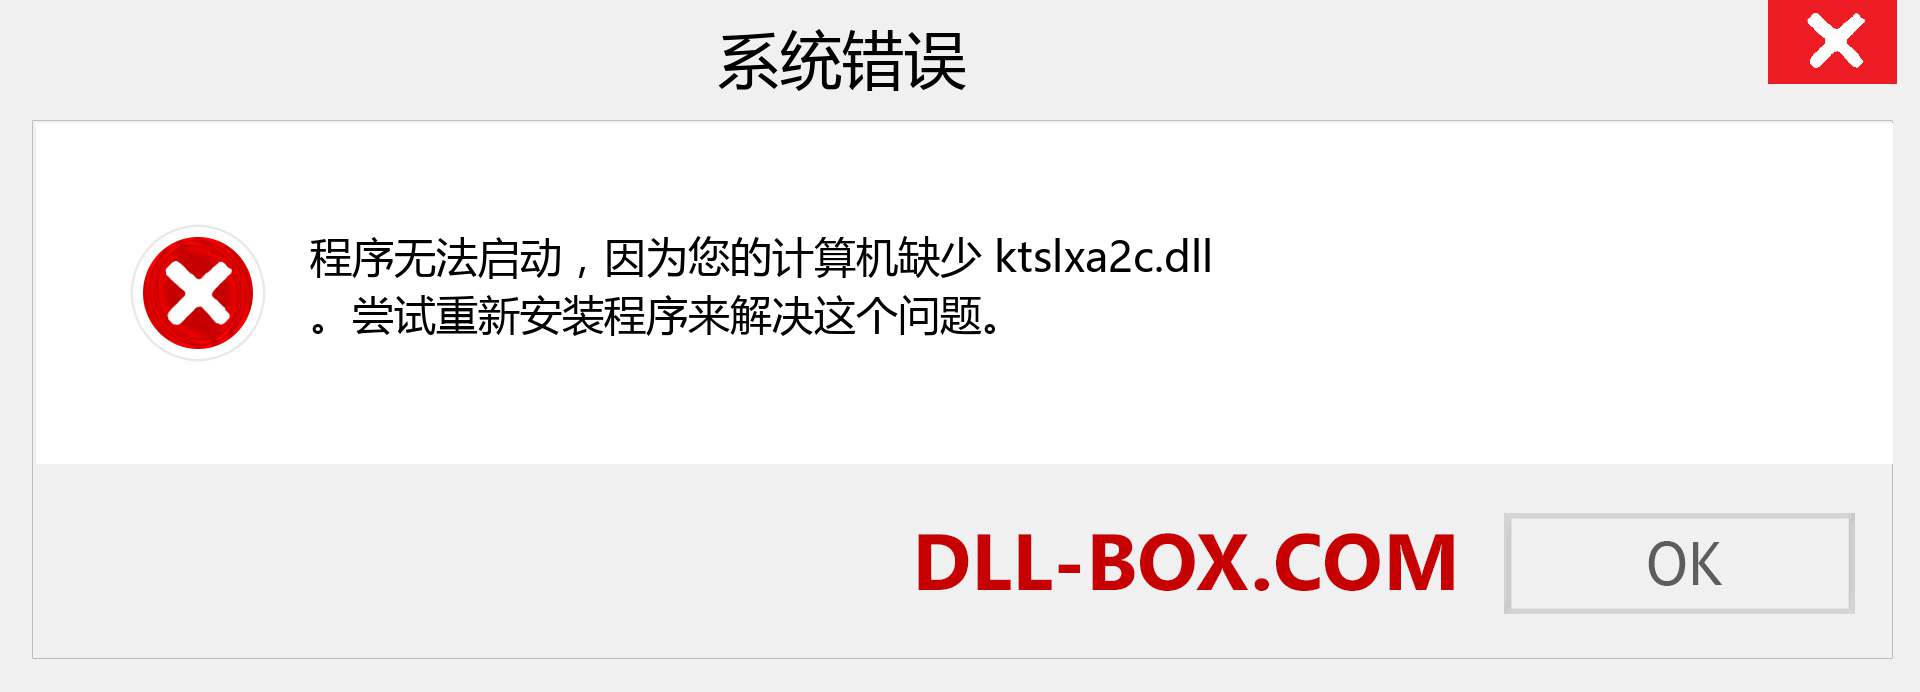 ktslxa2c.dll 文件丢失？。 适用于 Windows 7、8、10 的下载 - 修复 Windows、照片、图像上的 ktslxa2c dll 丢失错误